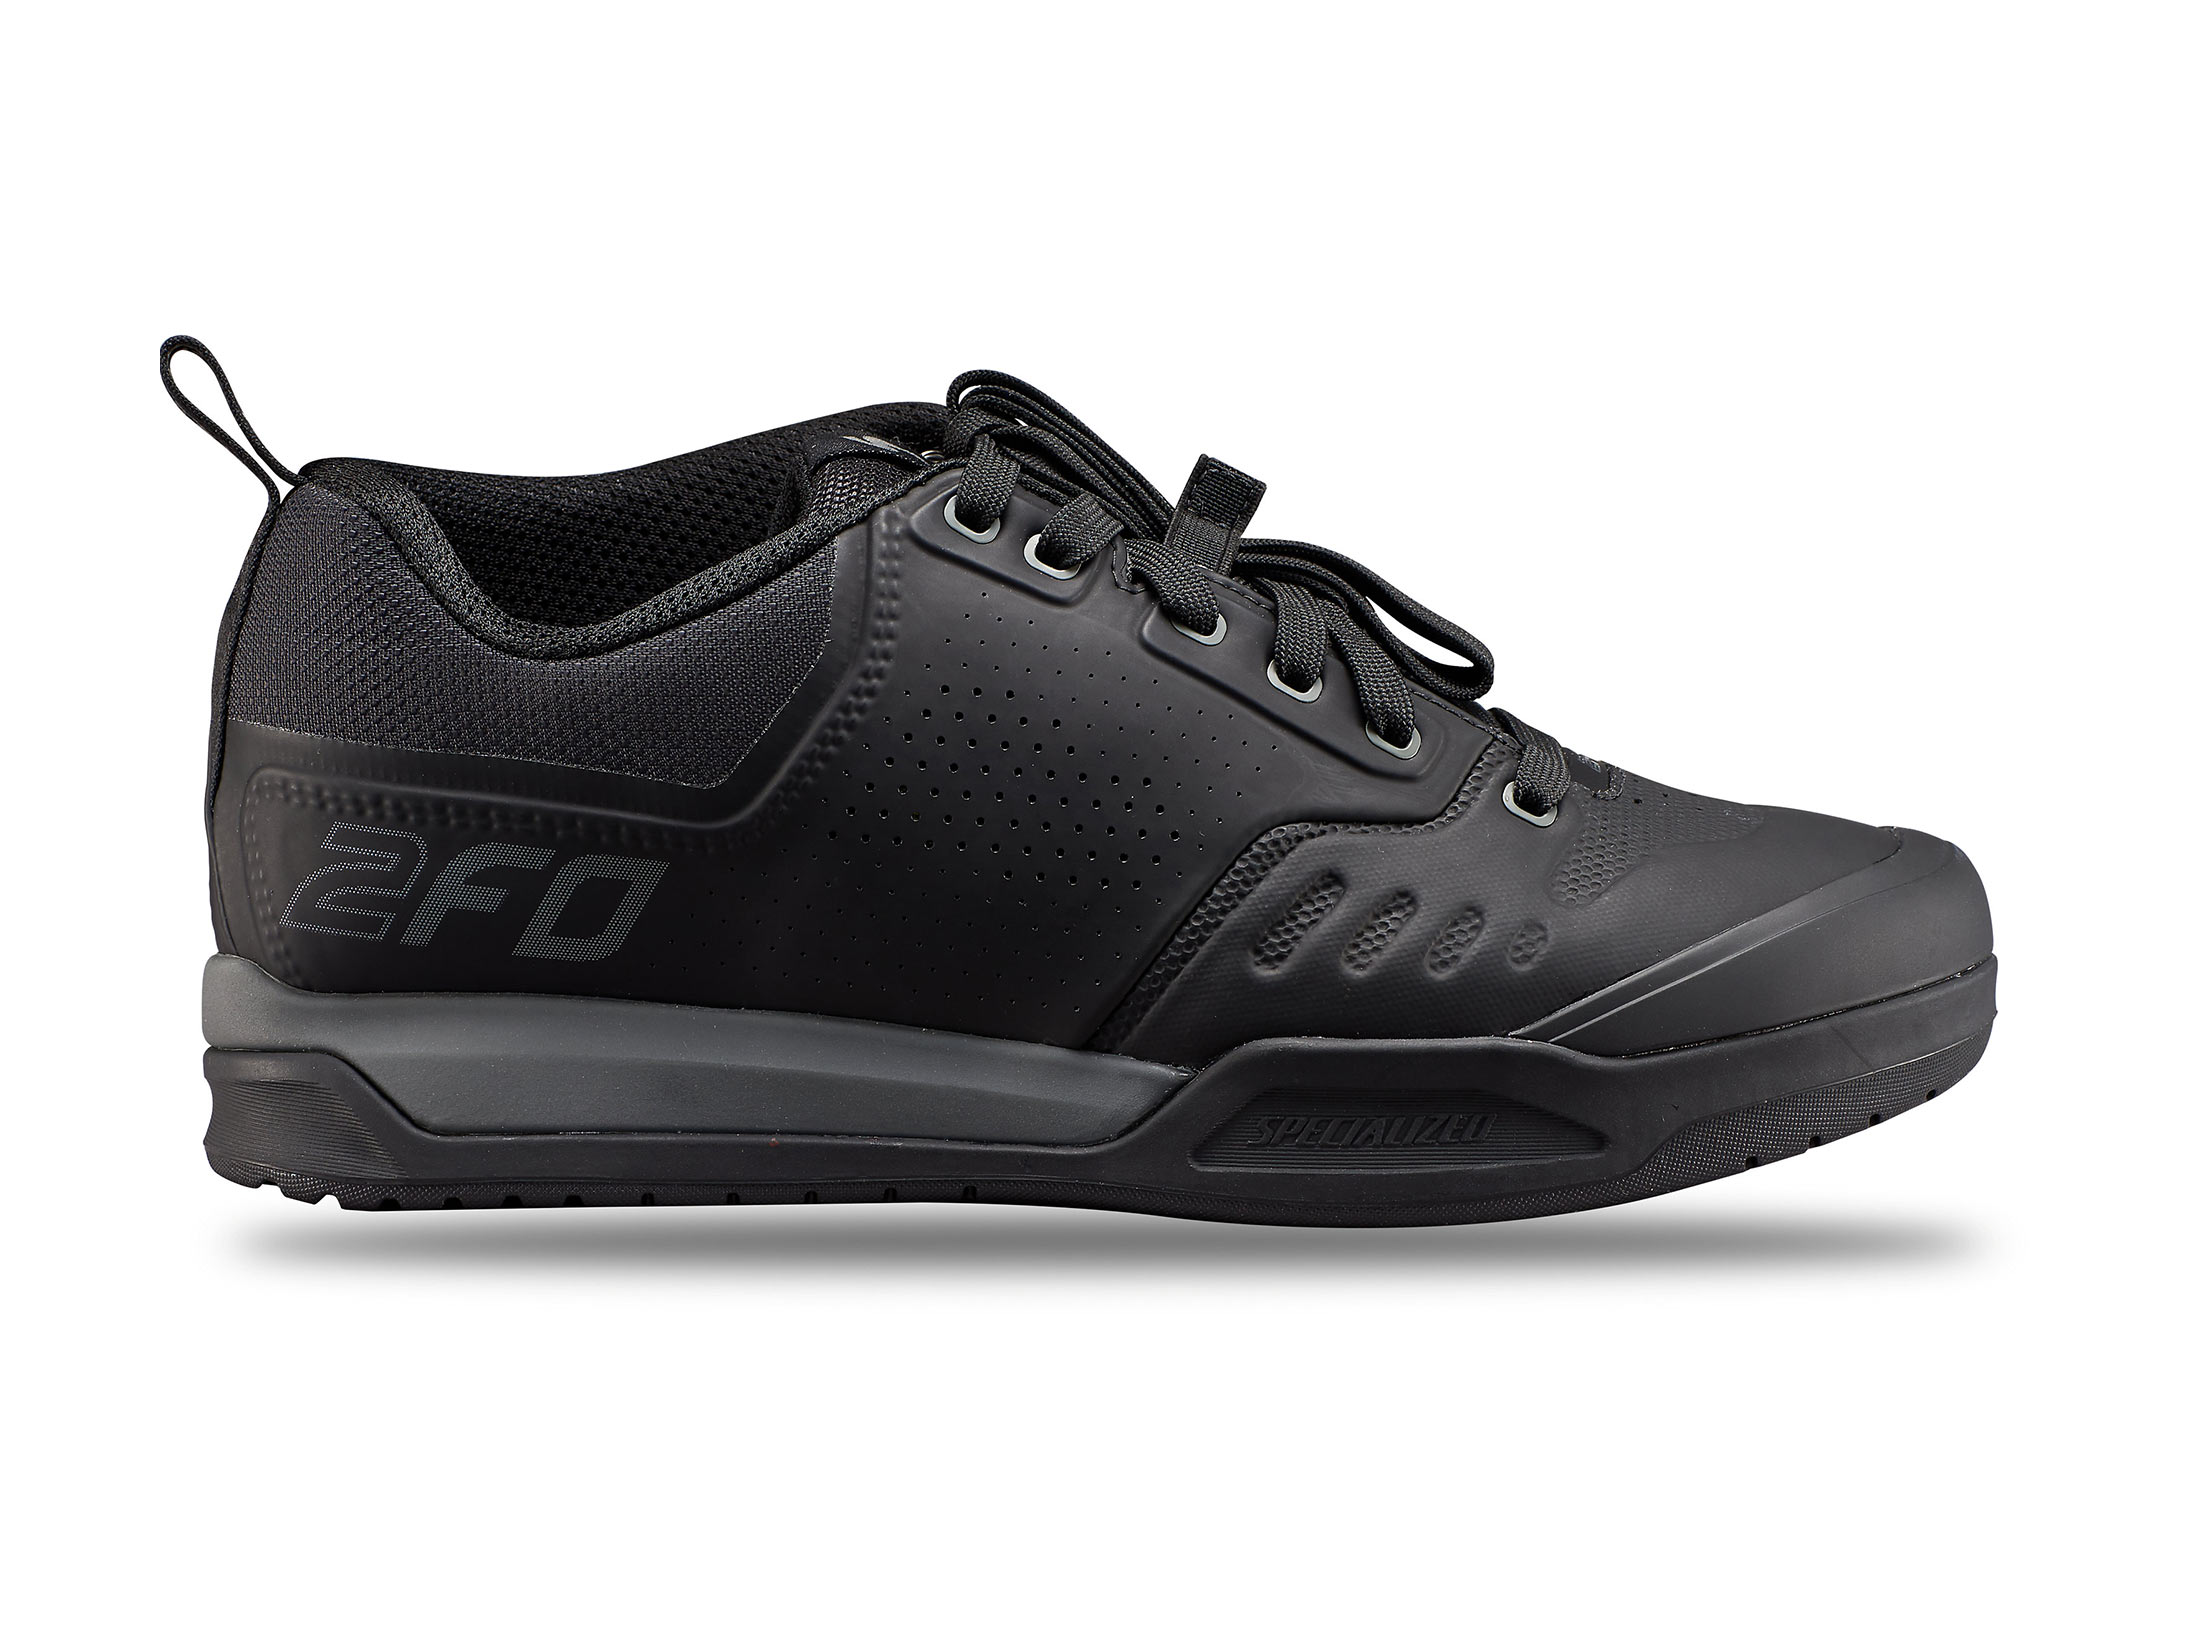 Παπούτσια Specialized 2FO Clip 2.0 Mountain Bike - Μαύρα